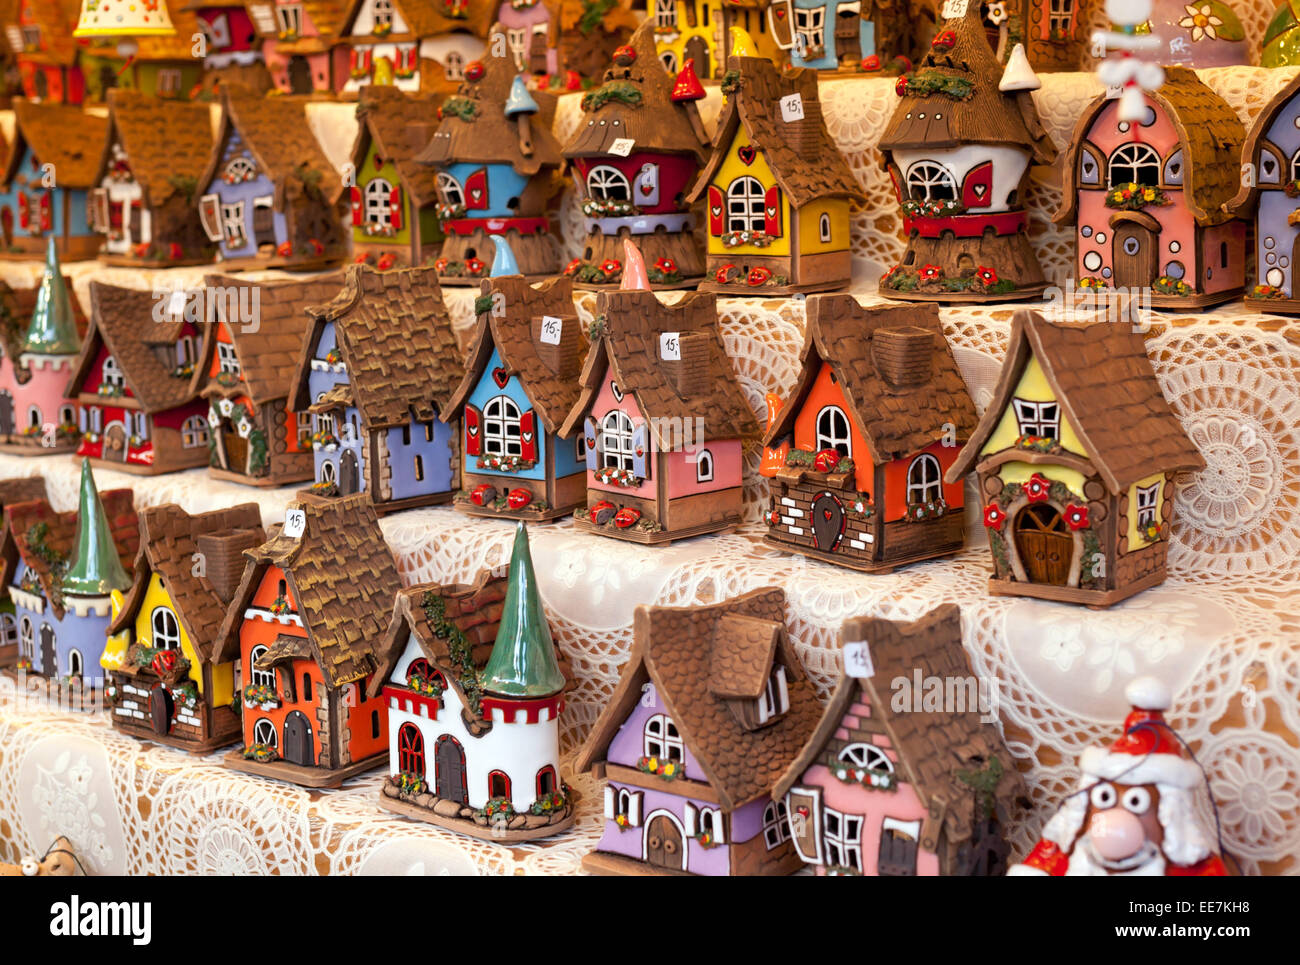 Vente de reproductions des petites maisons typiques en allemand Marché de Noël. Banque D'Images